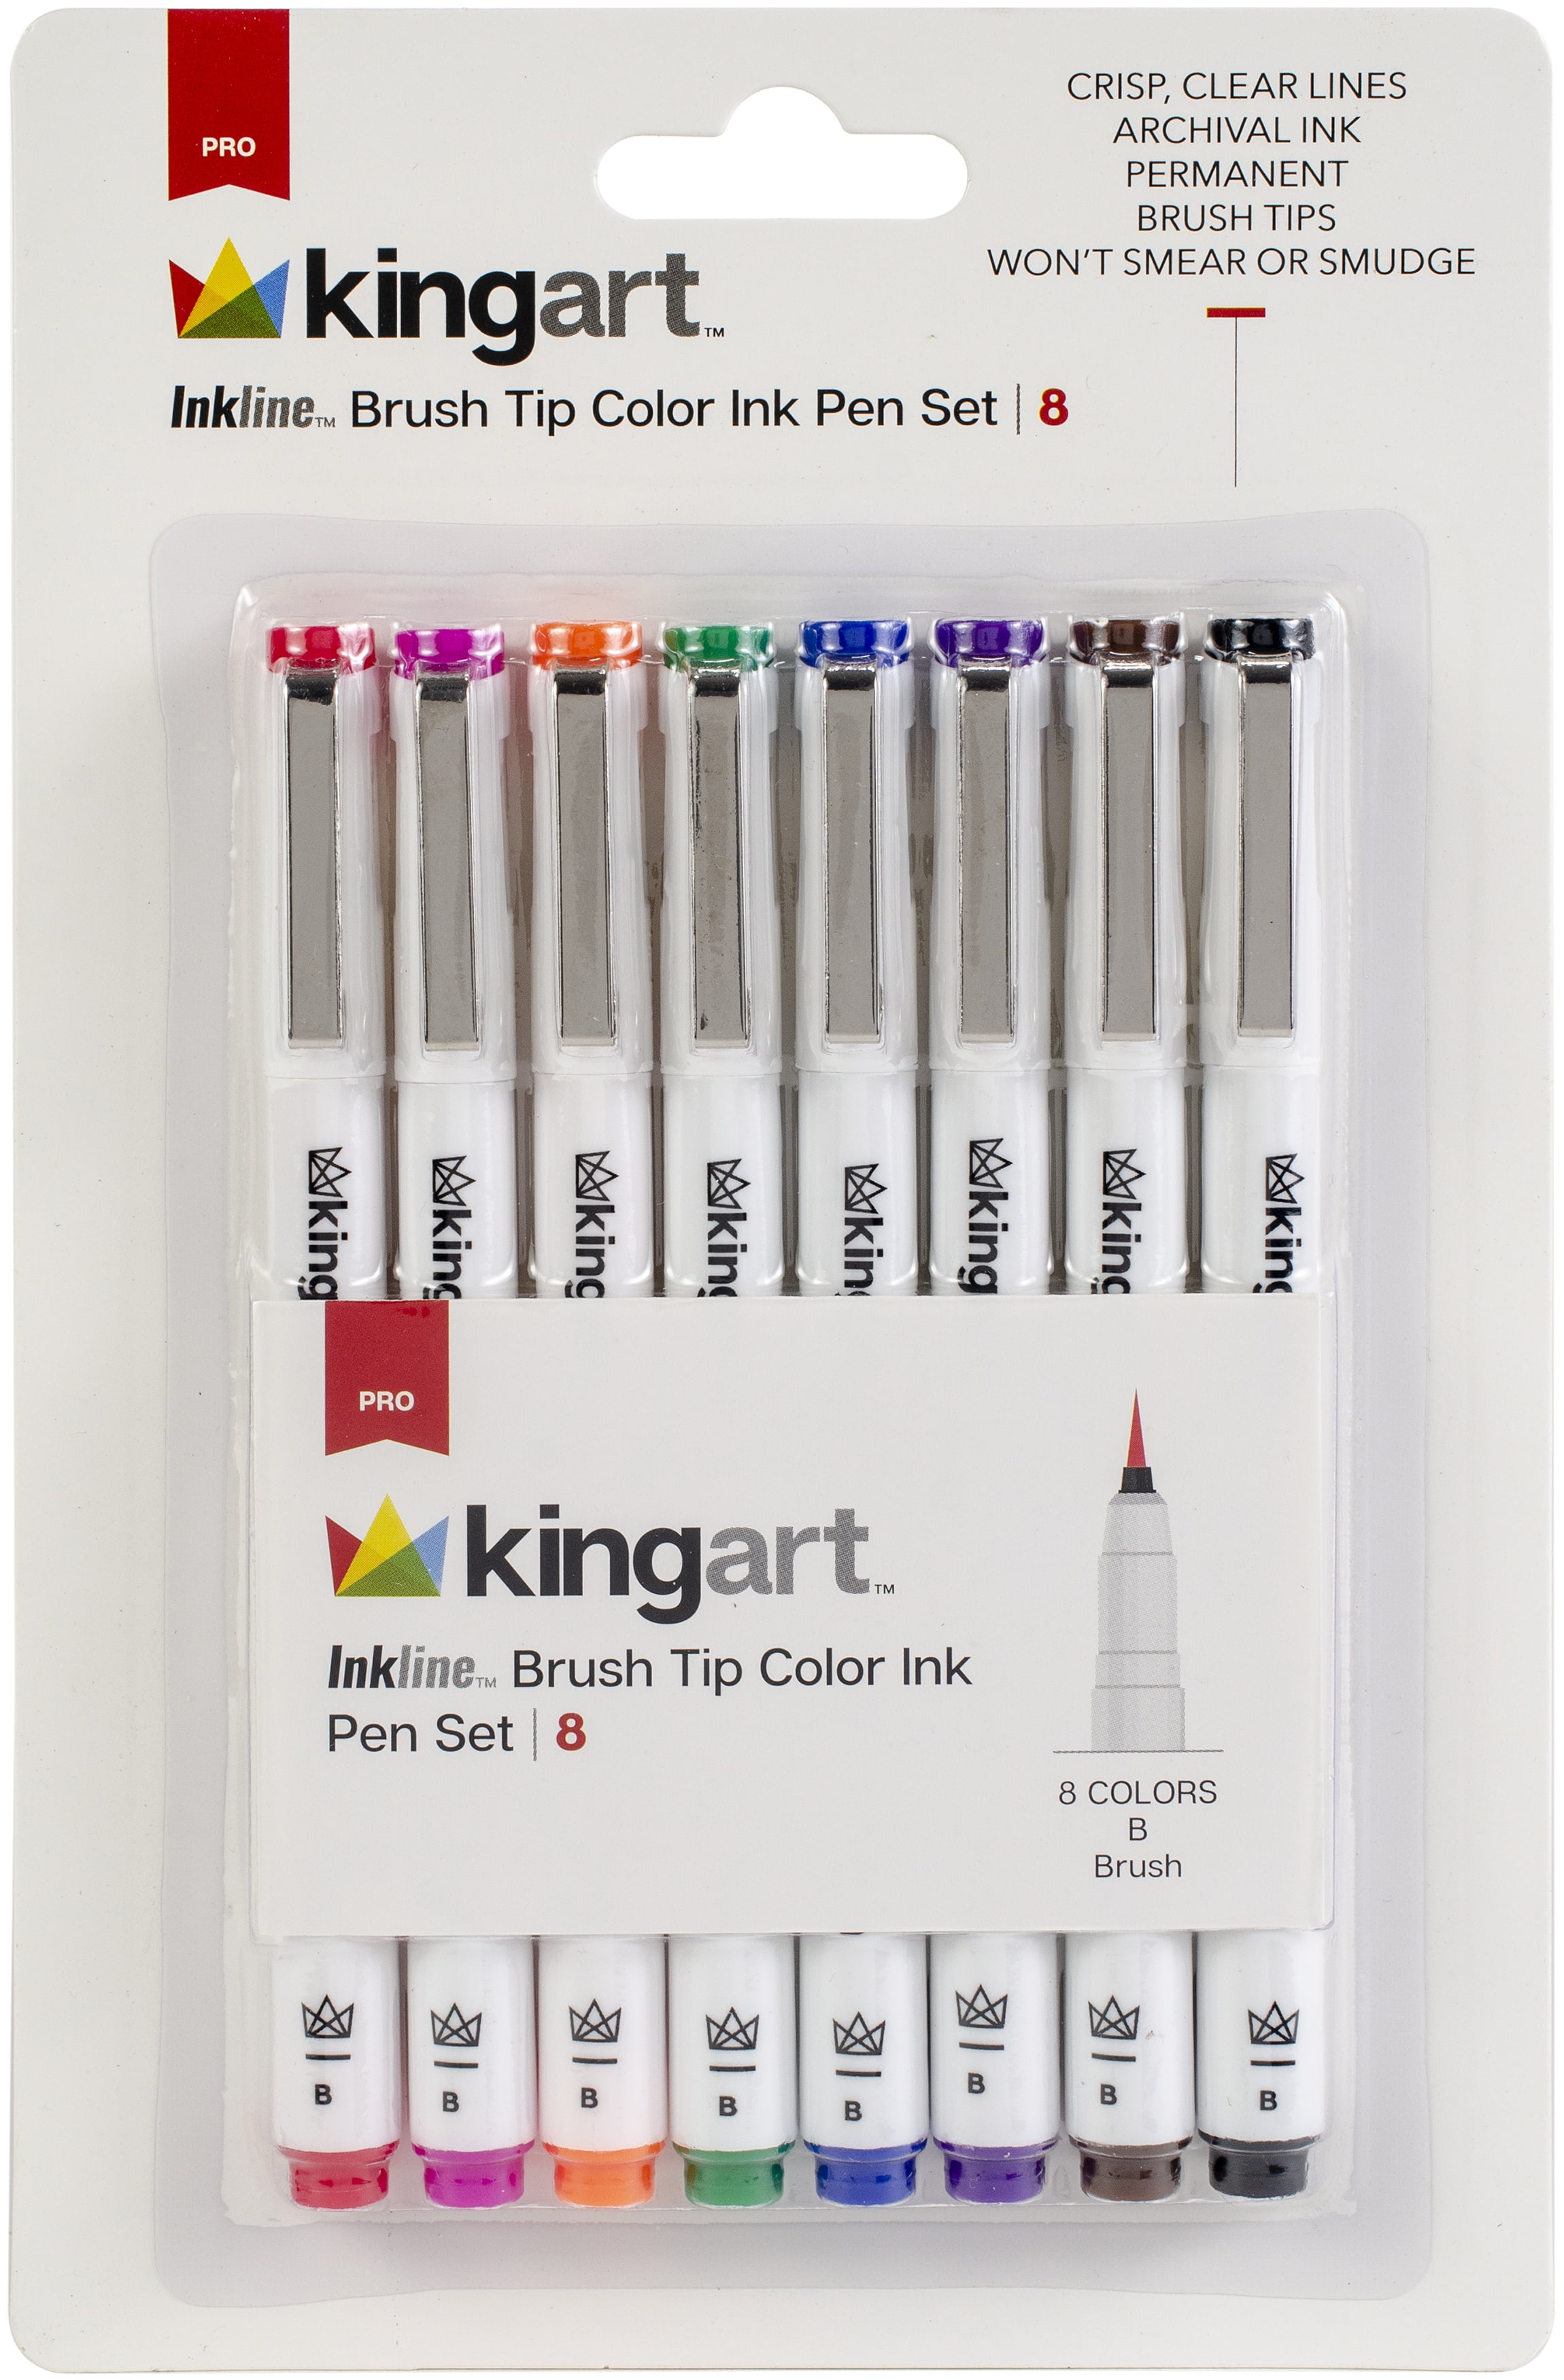 Kingart Inkline Fine Line Art & Graphic Pens, Archival Japanese Ink, Set of 8 Unique Colors